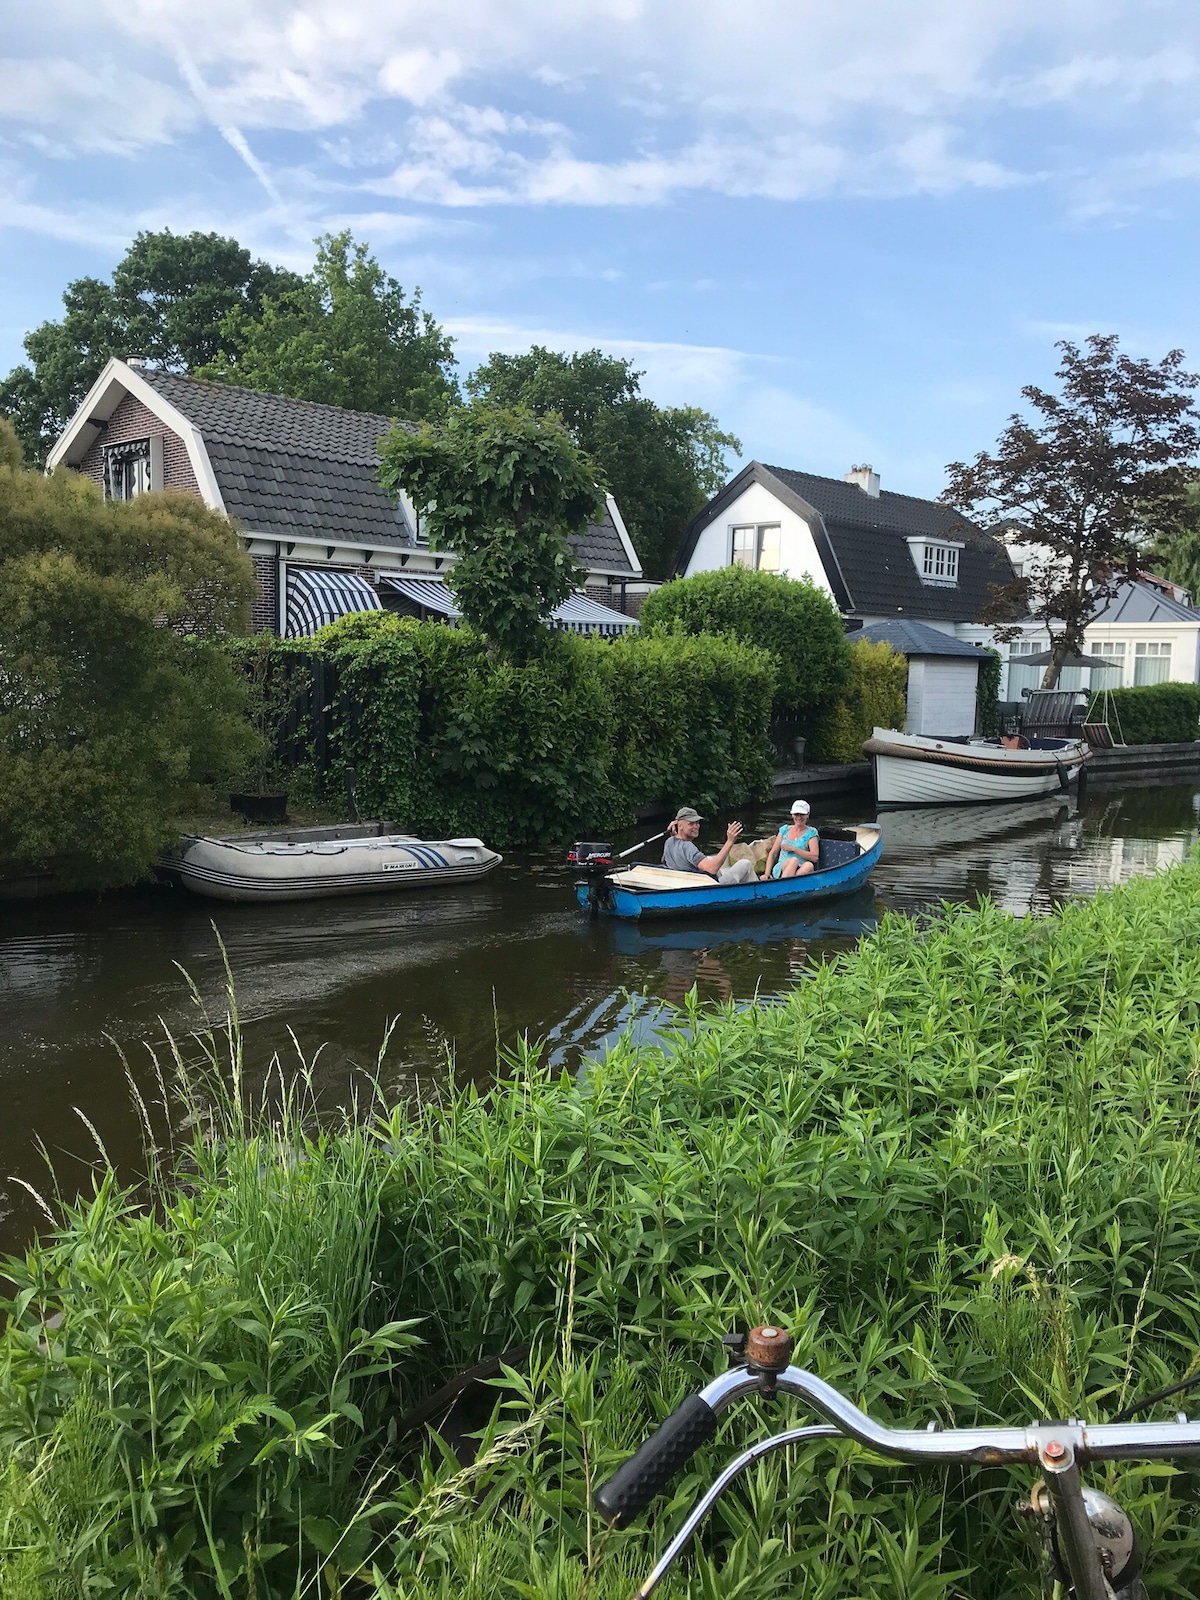 Baambrugge Waterfront Rentals - Utrecht, Netherlands | Airbnb